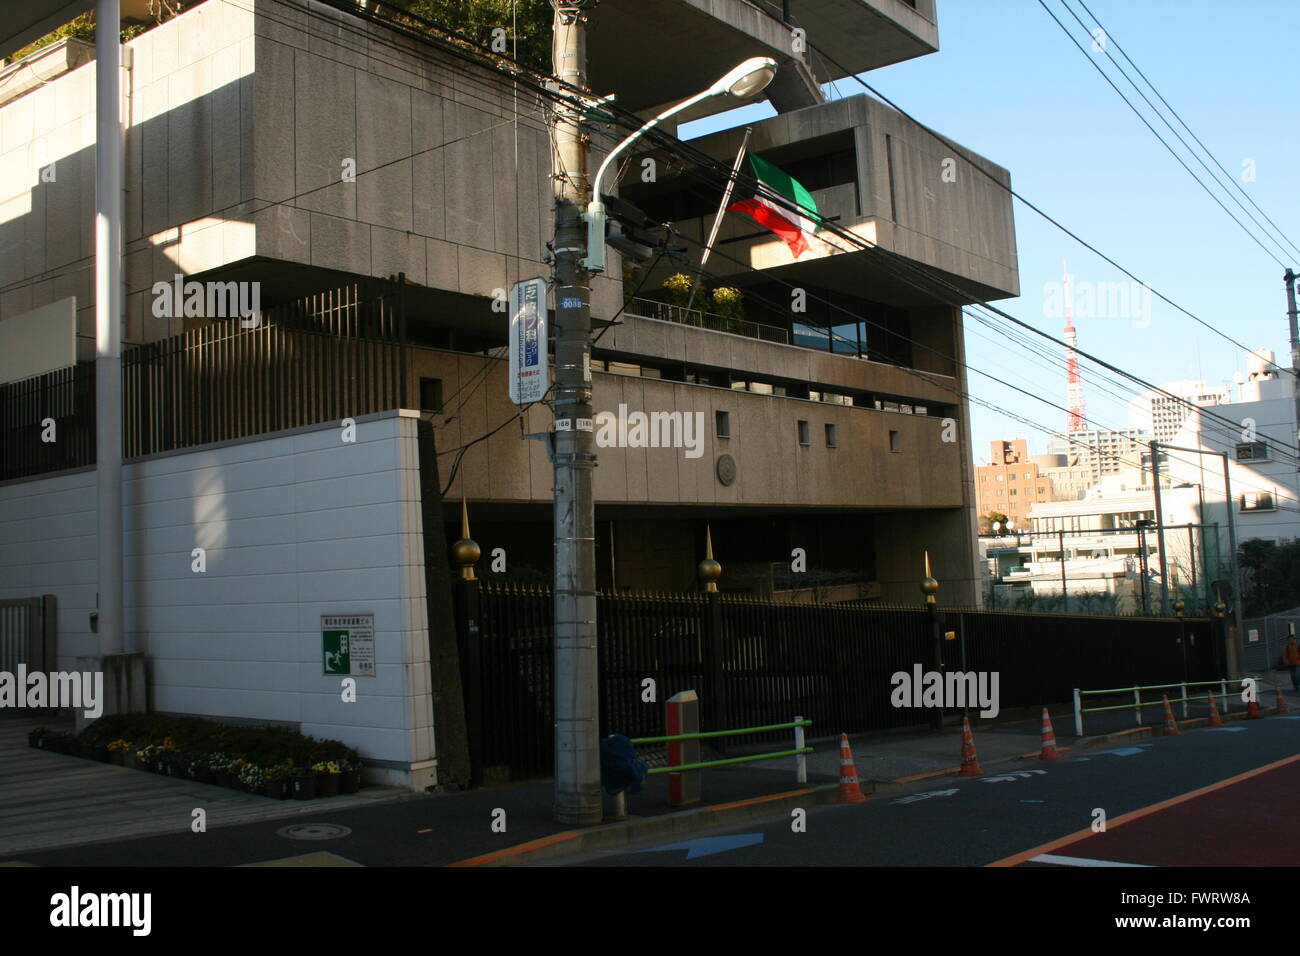 Kenzo Tange entworfene Botschaft von Kuwait in Tokio mit Tokyo Tower im Hintergrund sichtbar Stockfoto